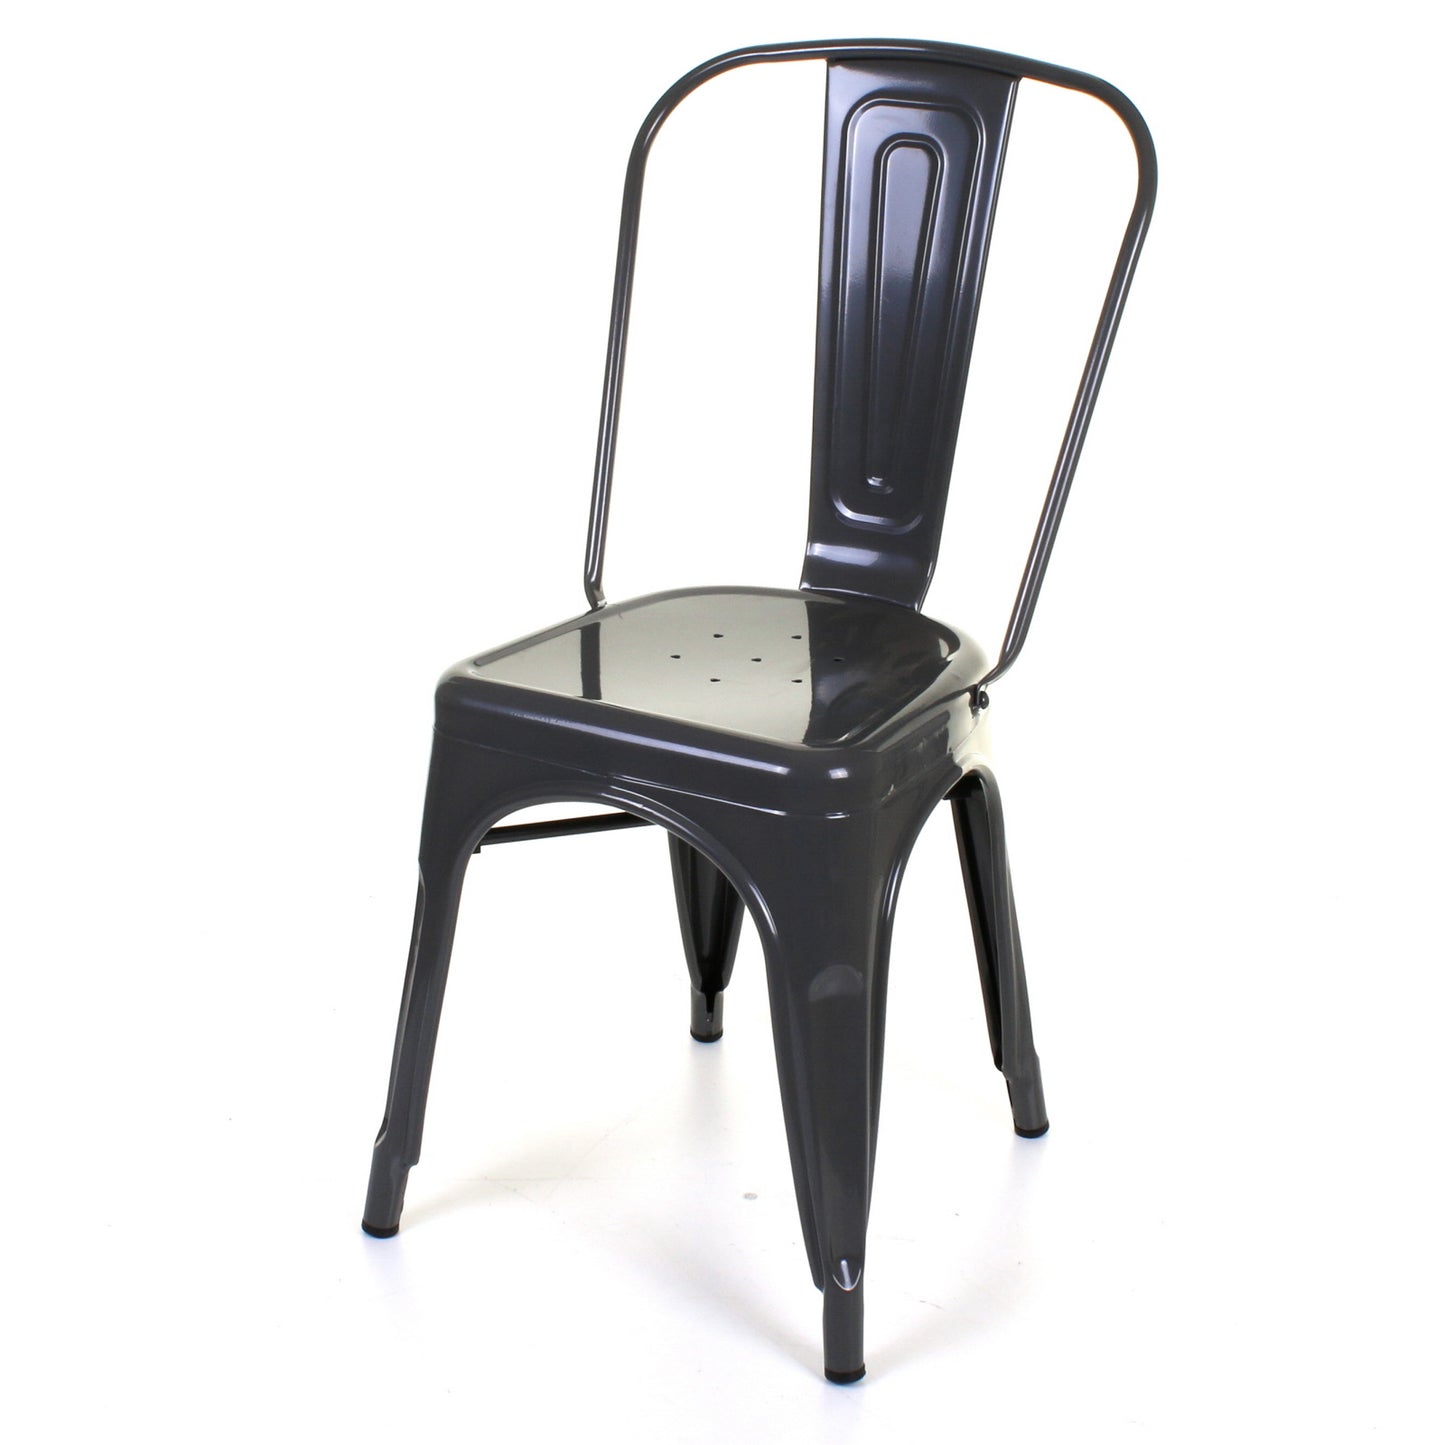 7PC Prato Table, 2 Forli & 4 Siena Chairs Set - Graphite Grey